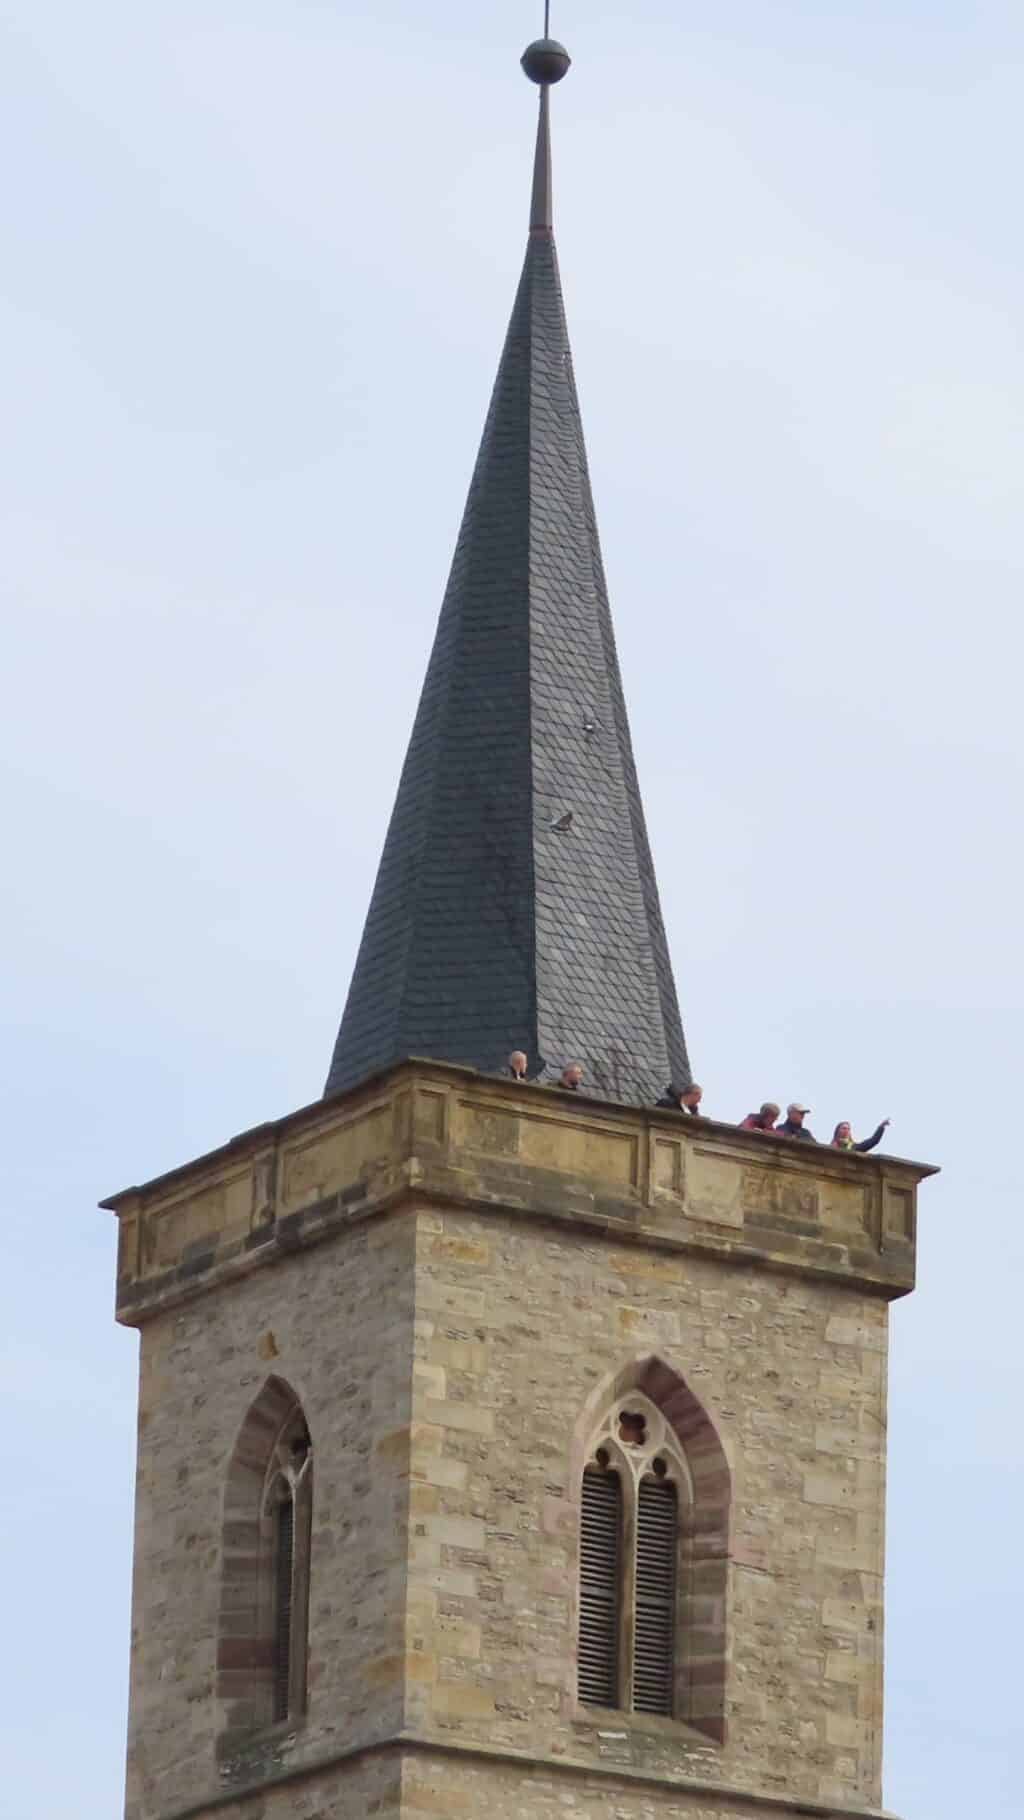 Turm der Aegidienkirche Erfurt mit Besuchern_erfurt